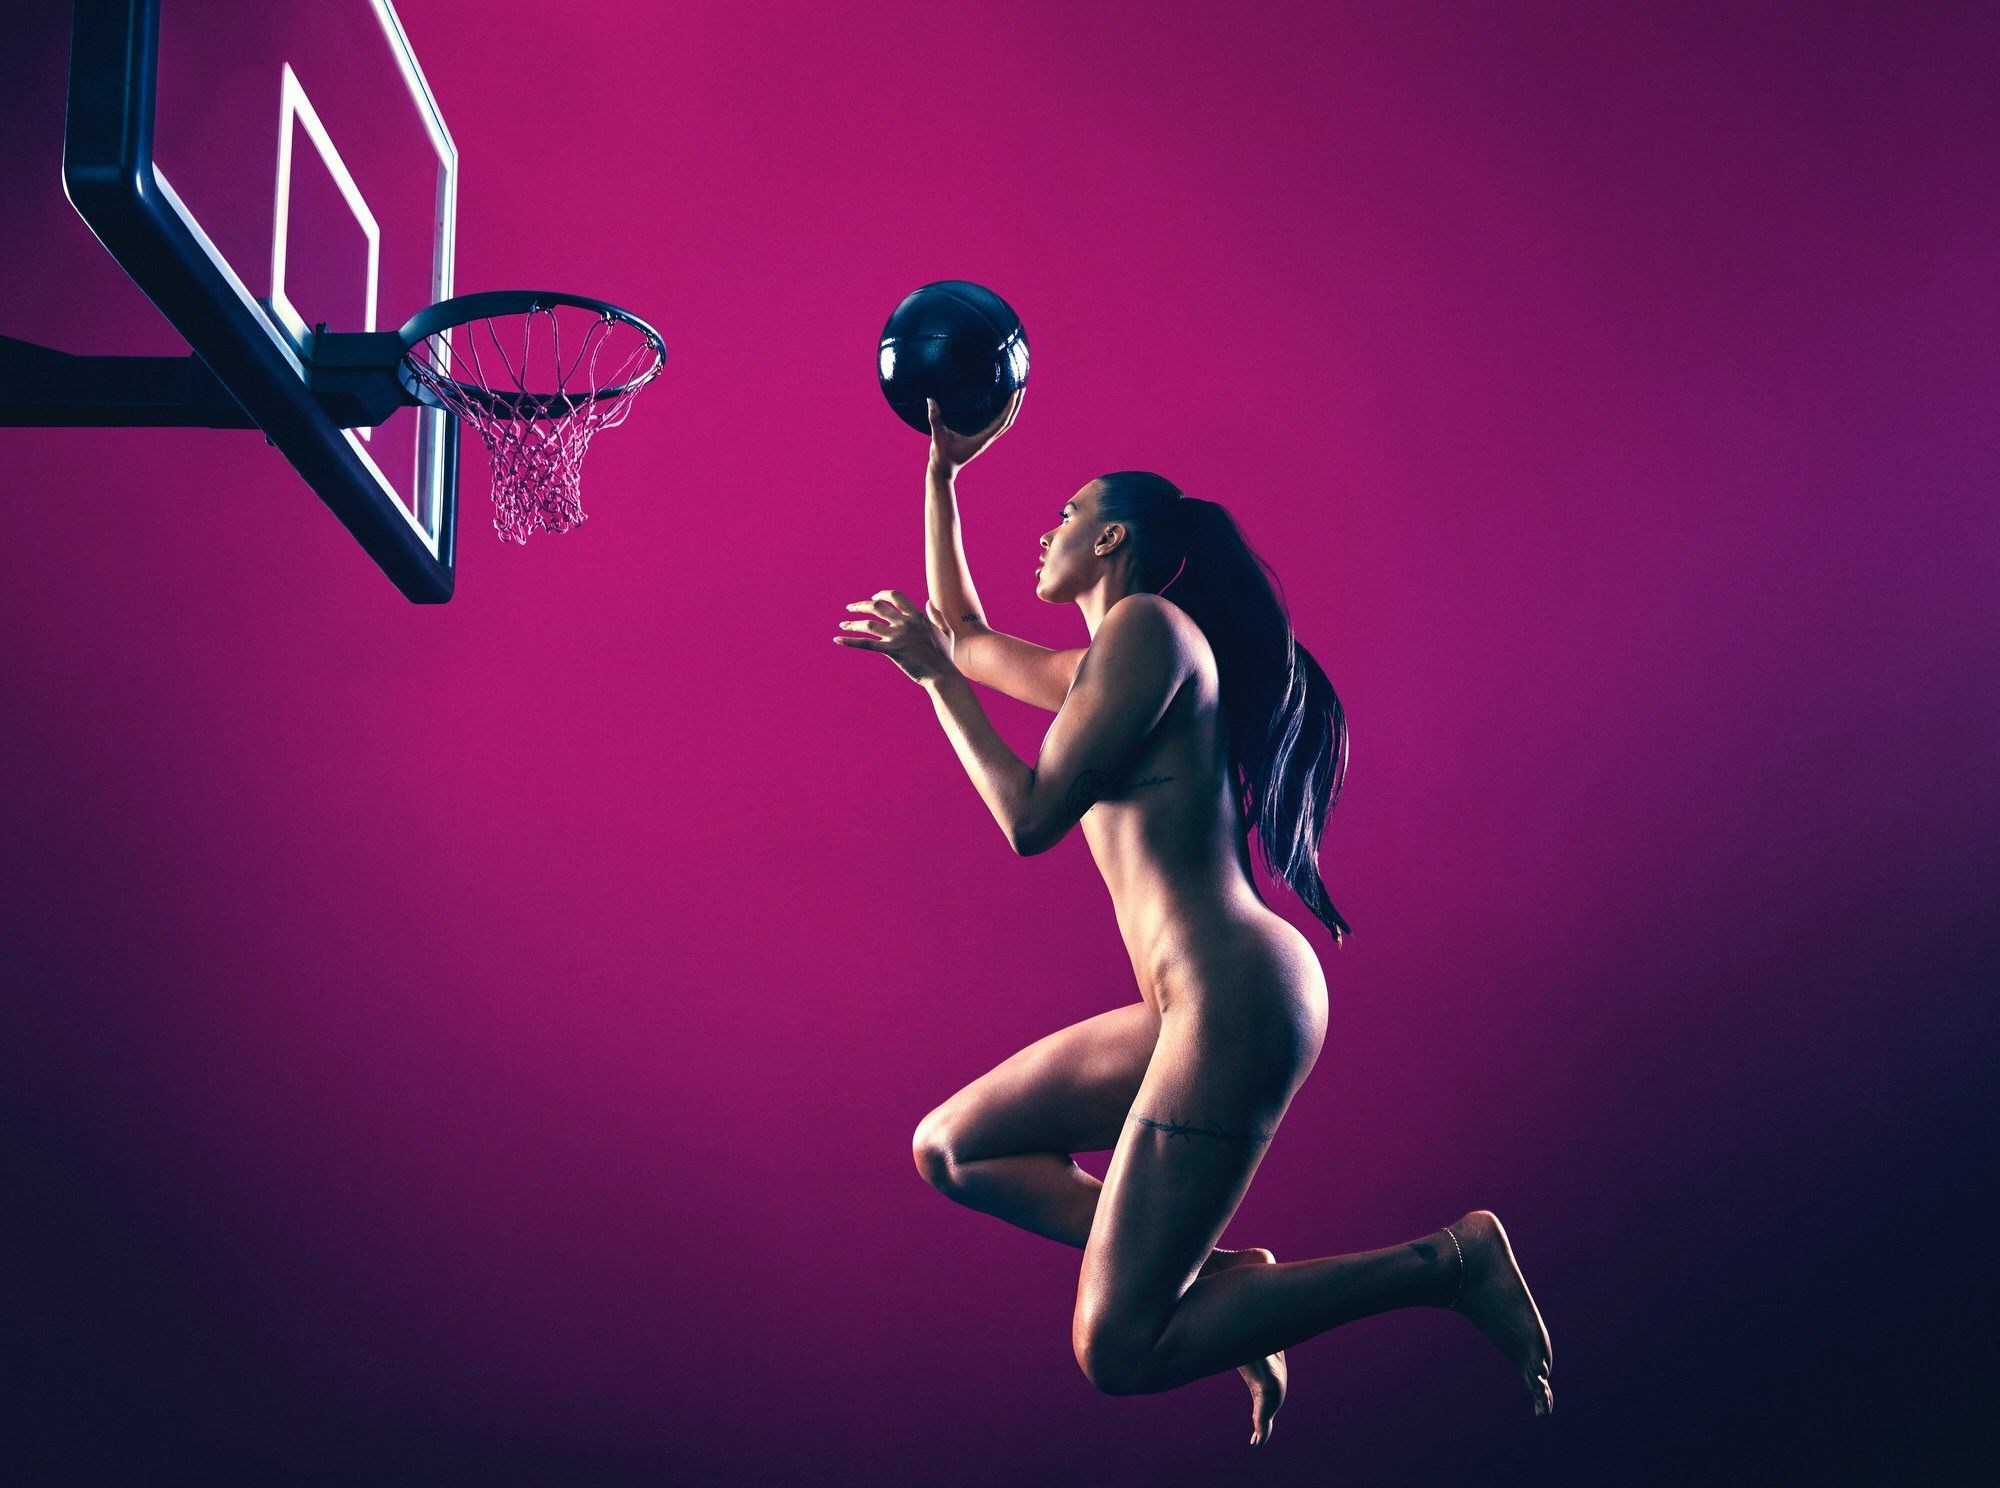 https://ddeva.info/uploads/posts/2023-01/1673864685_26-ddeva-info-p-porn-female-basketball-players-27.jpg